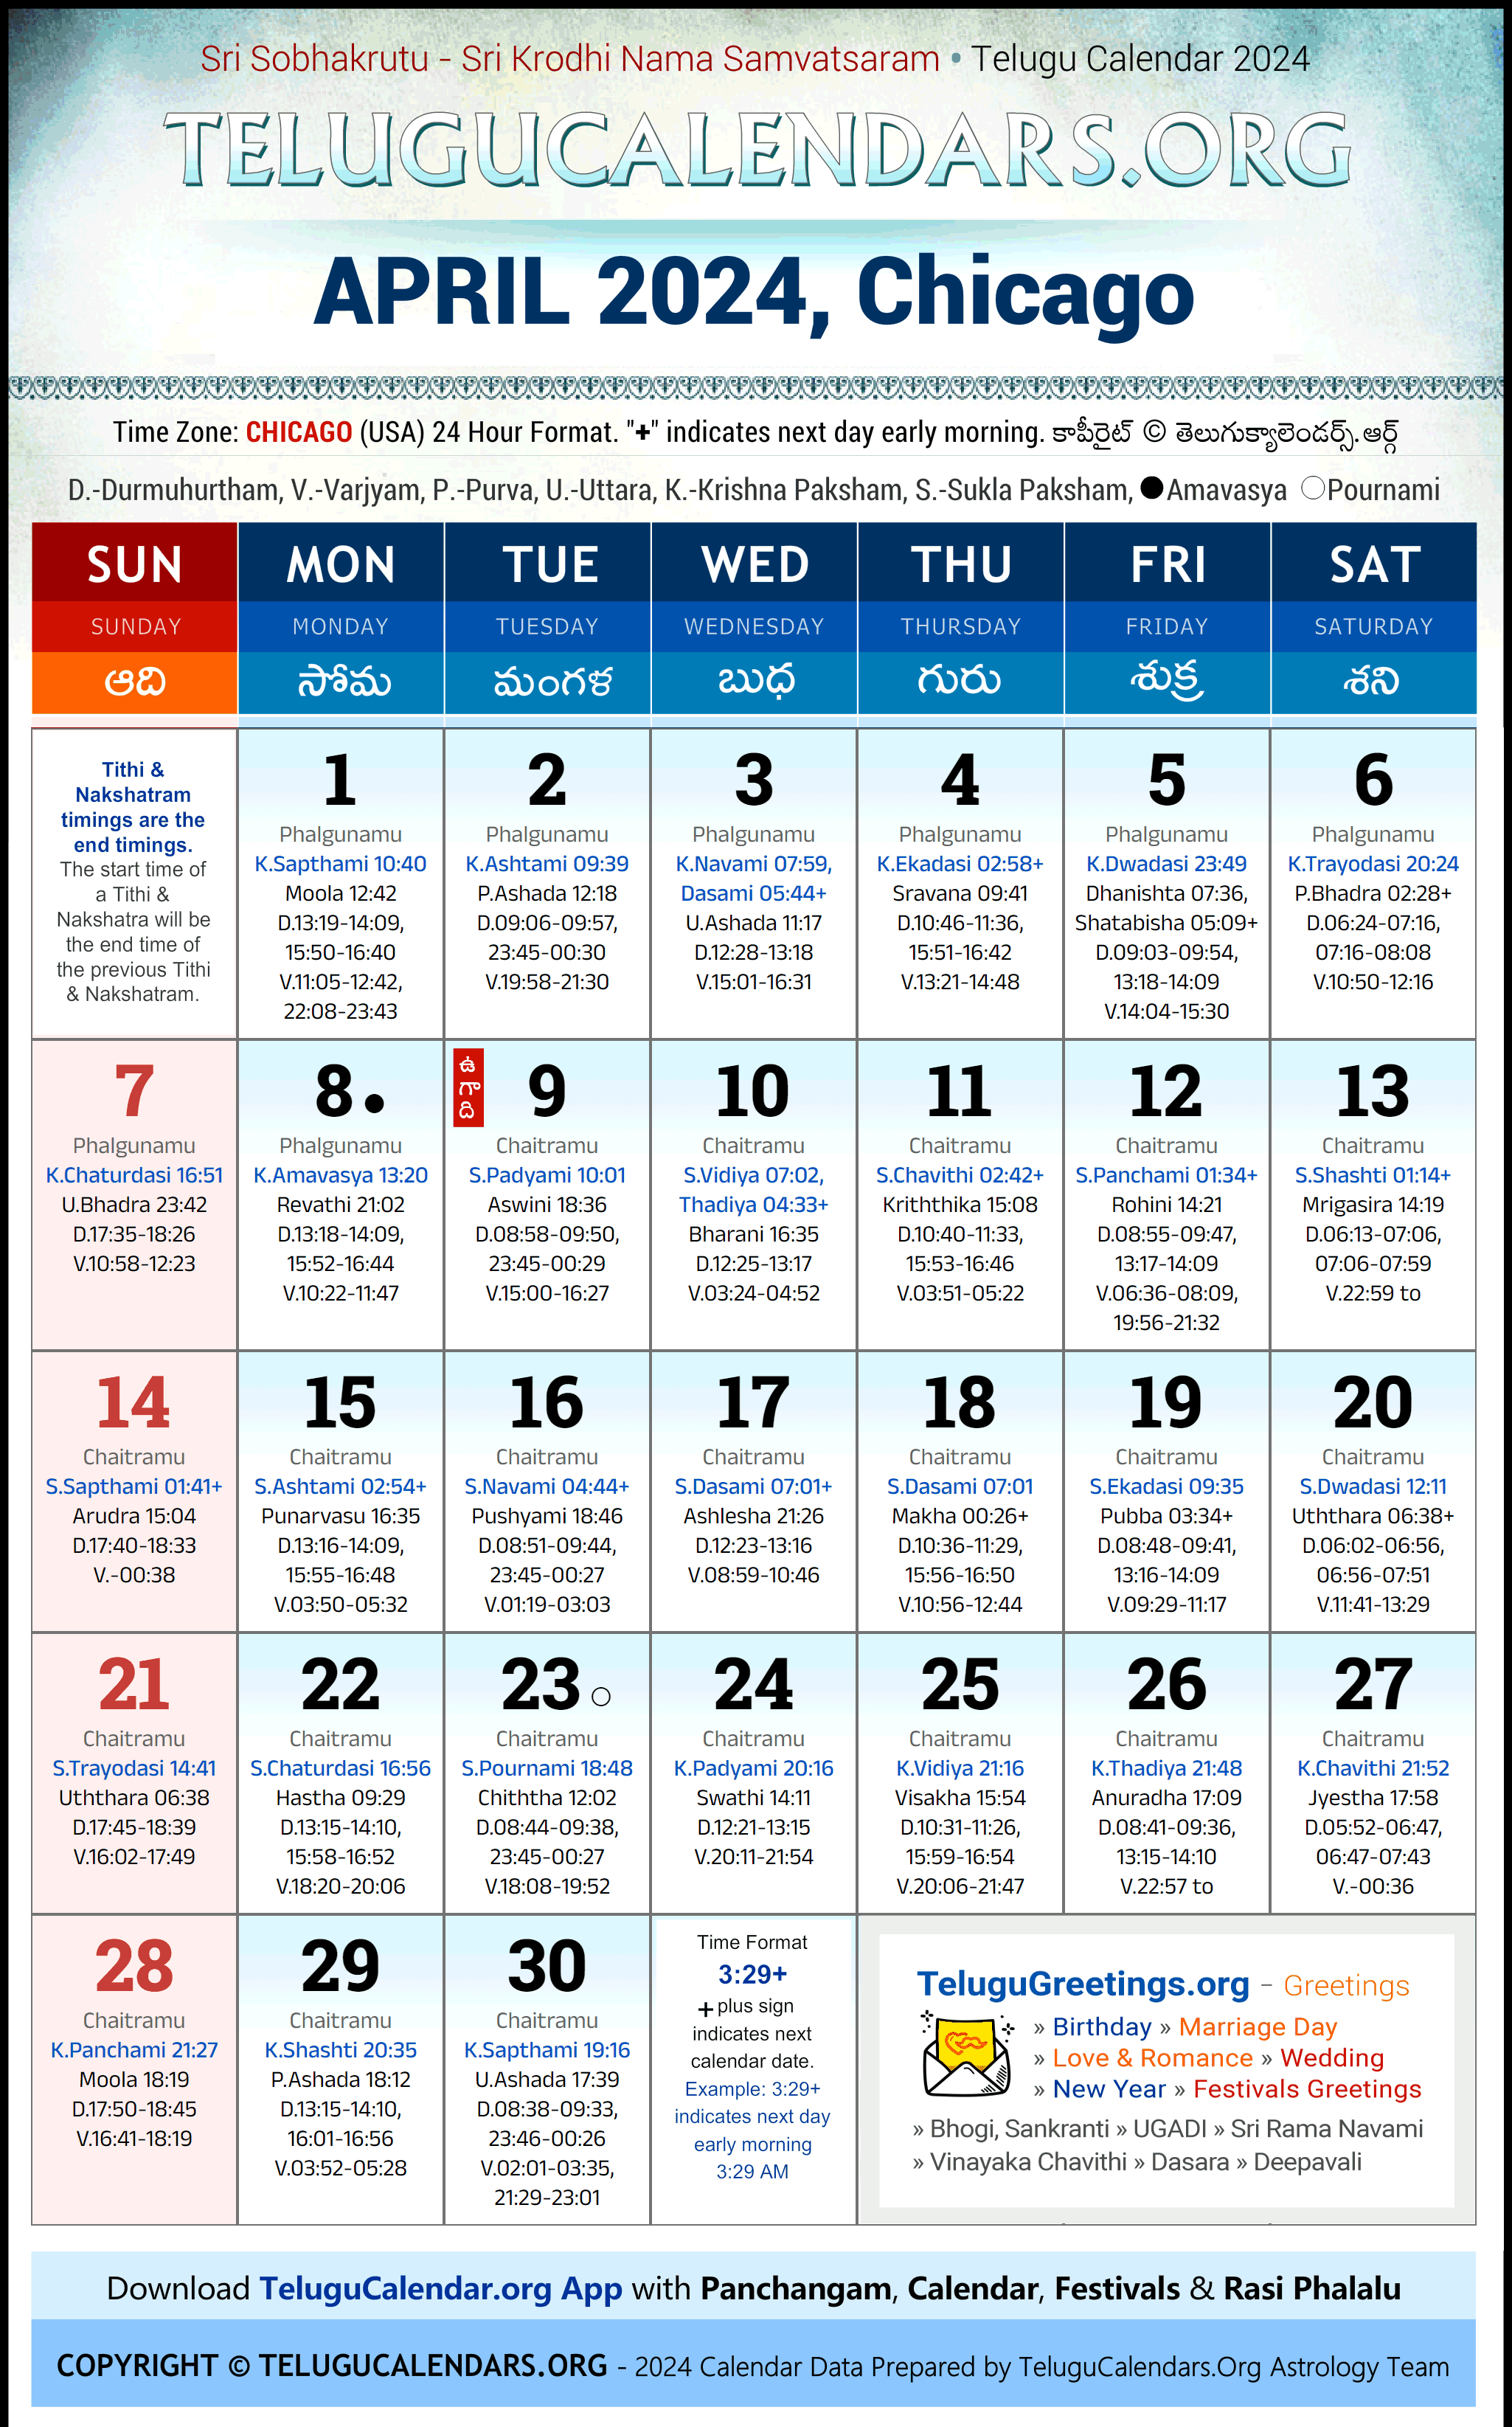 Telugu Calendar 2024 April Festivals for Chicago